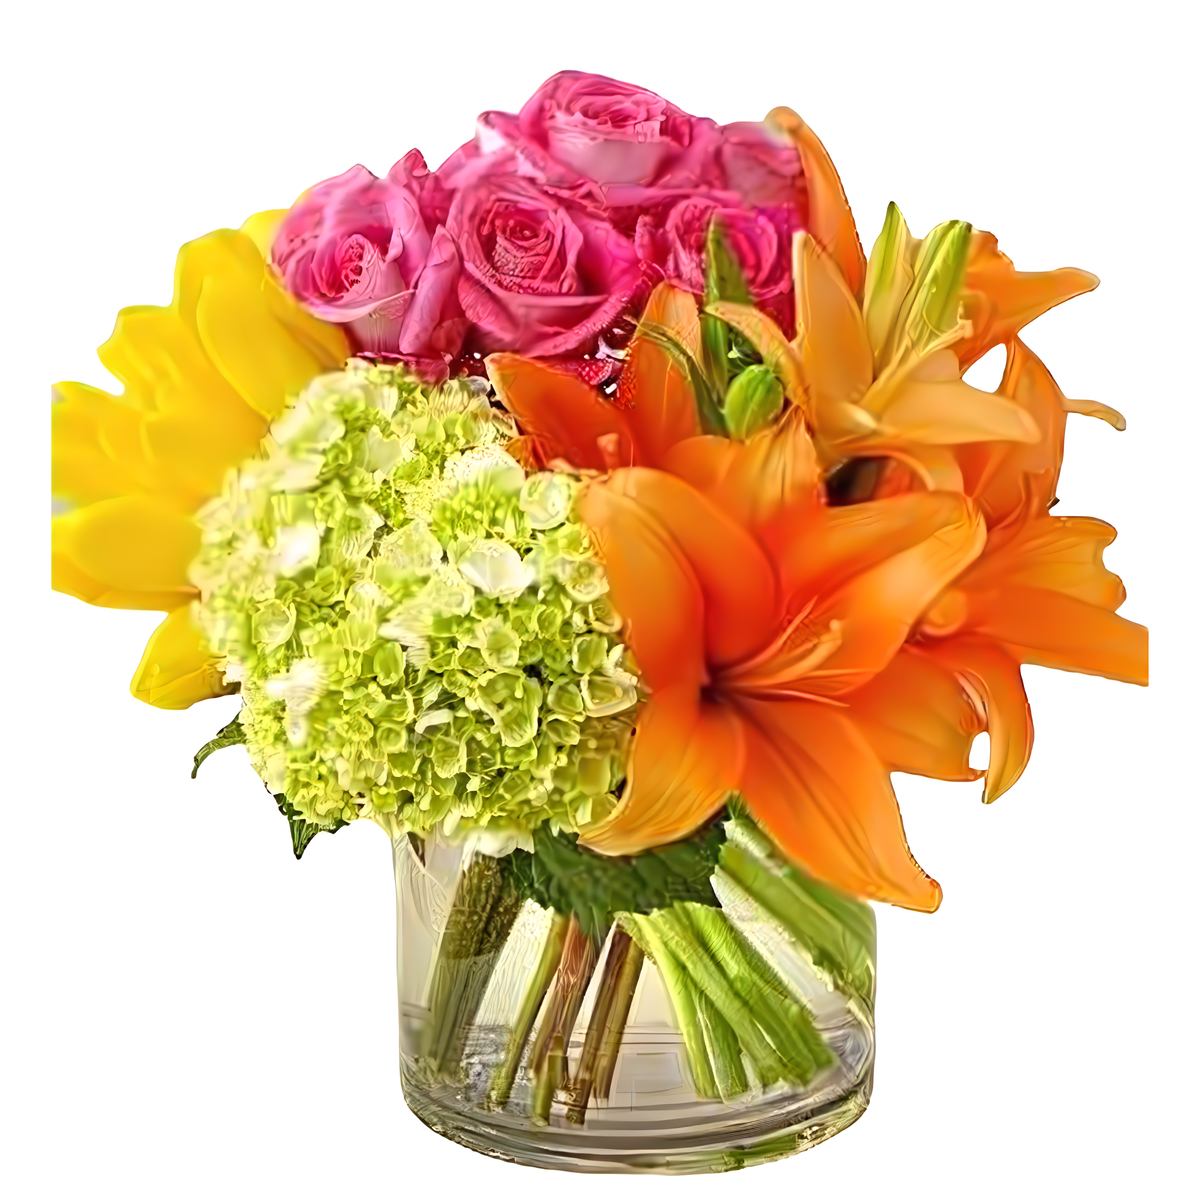 Manhattan Flower Delivery - The Colorburst - Birthdays